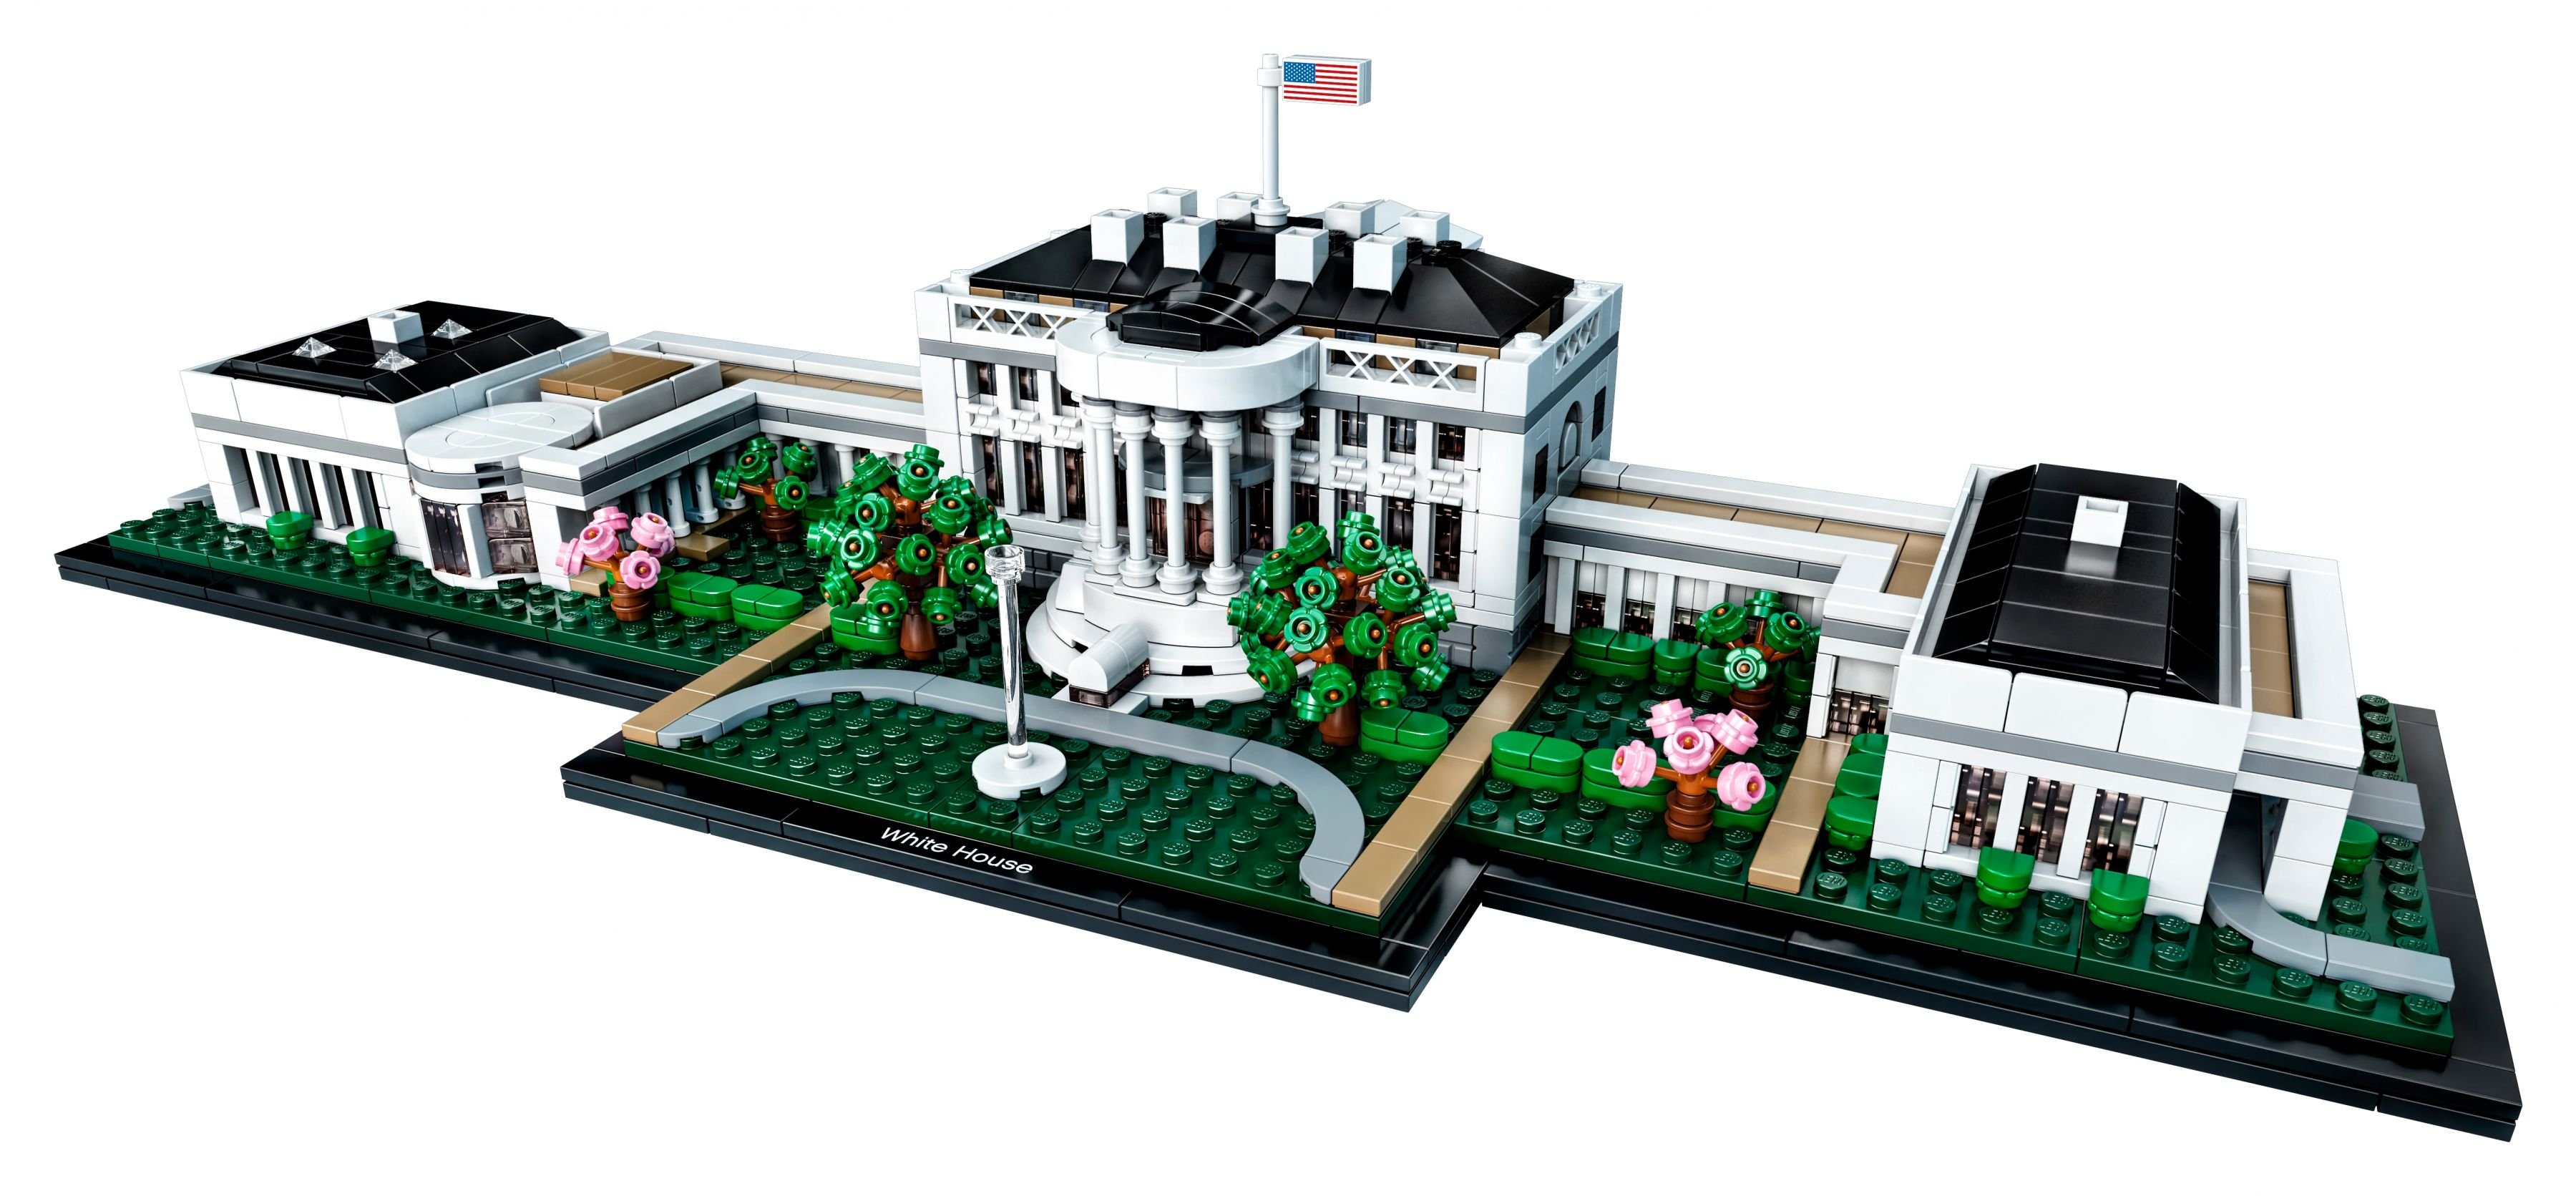 LEGO Architecture 21054 Das Weiße Haus LEGO_21054.jpg